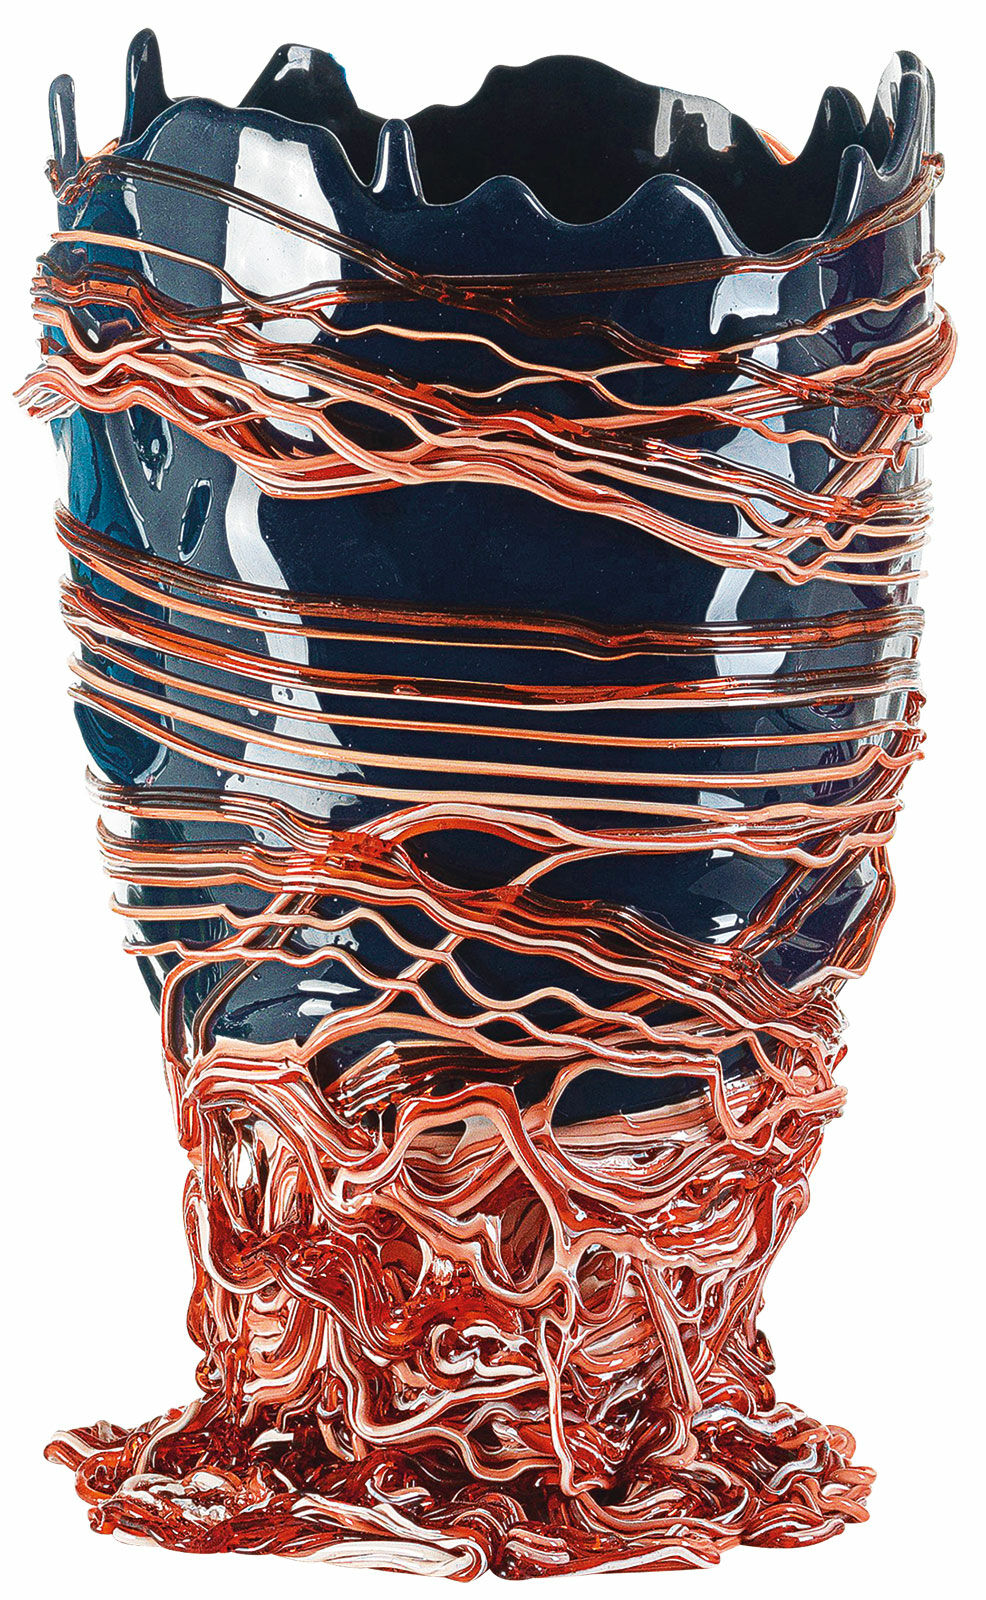 Vase "Spaghetti", silicone by Fish Design by Gaetano Pesce